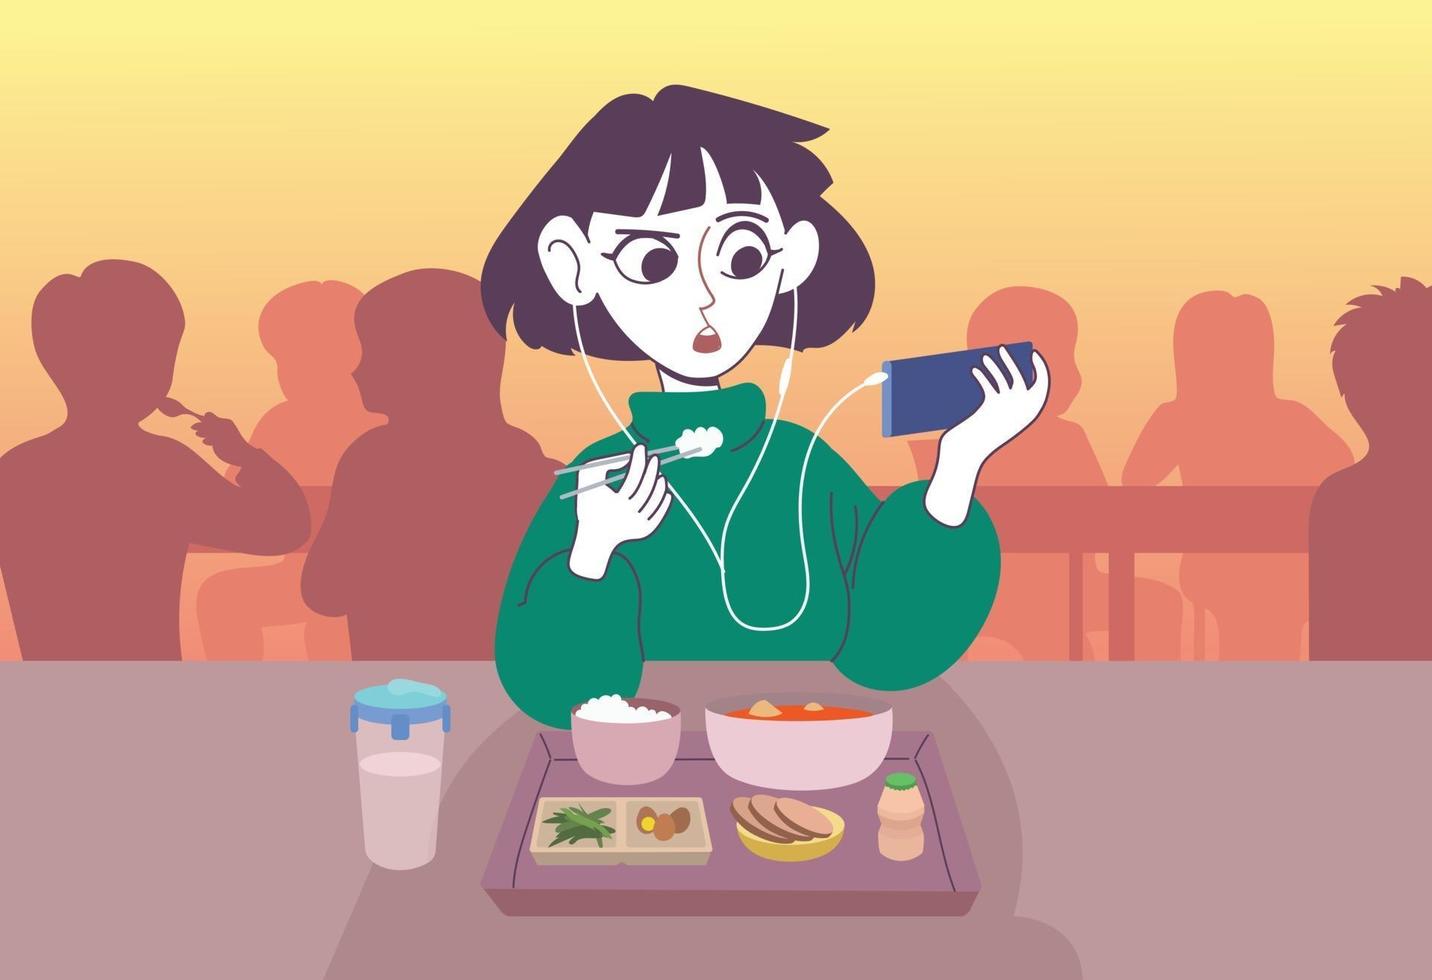 una donna che mangia un pasto con gli auricolari. illustrazioni di disegno vettoriale stile disegnato a mano.